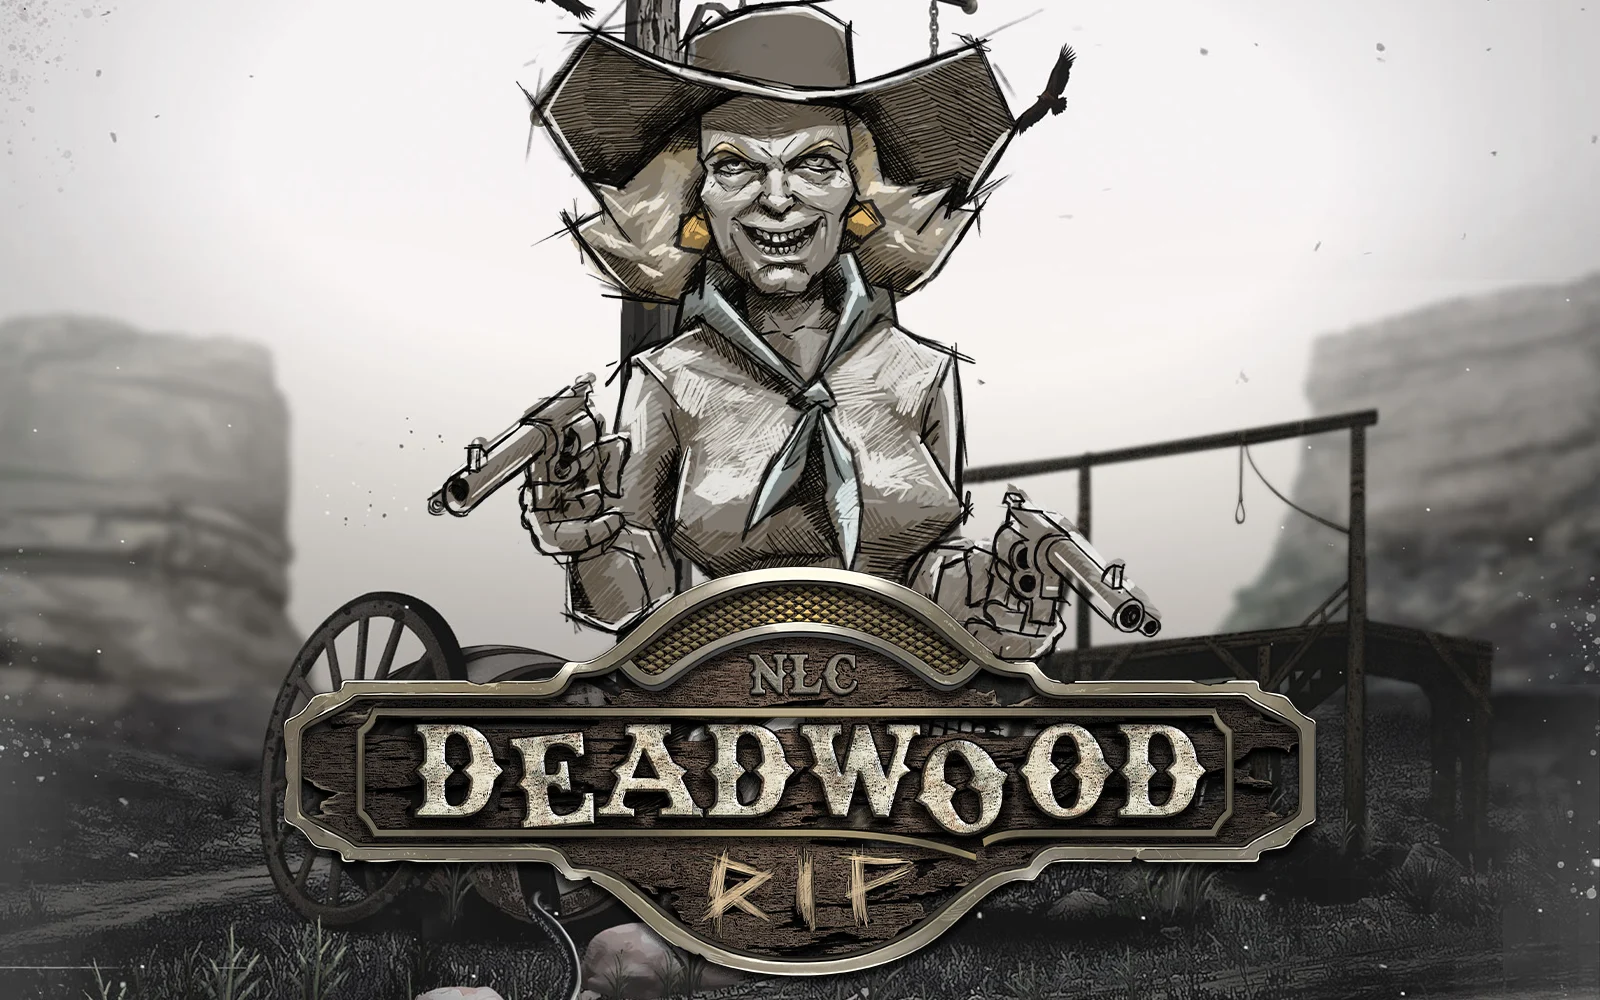 Speel Deadwood R.I.P op Starcasino.be online casino